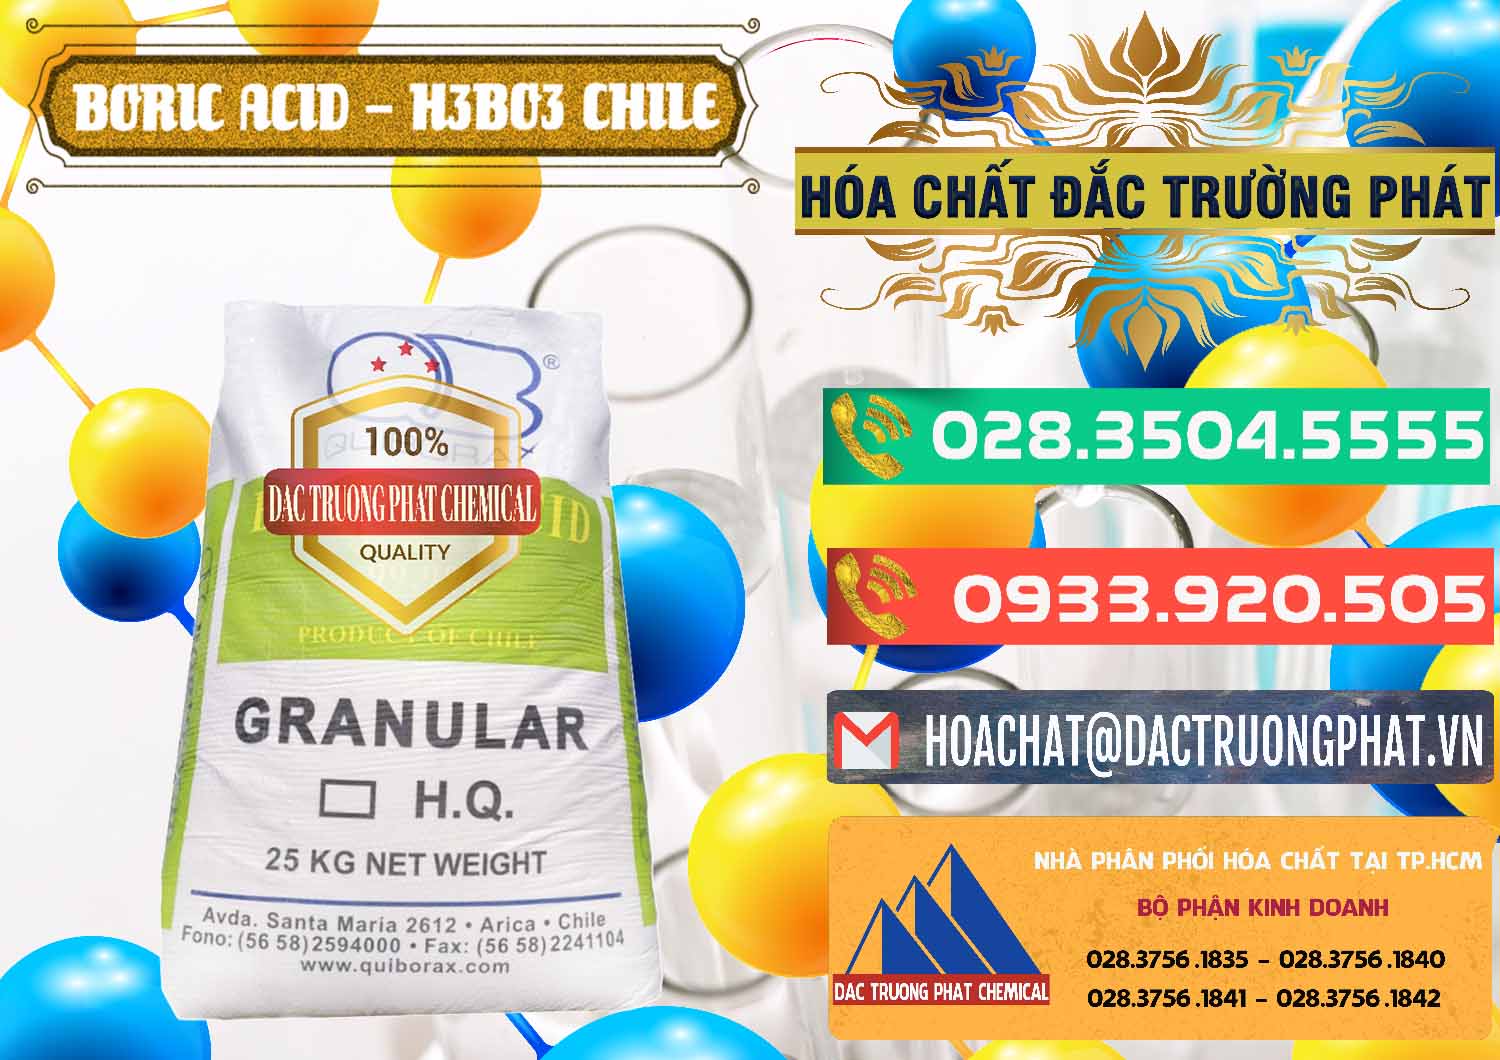 Cty chuyên nhập khẩu _ bán Acid Boric – Axit Boric H3BO3 99% Quiborax Chile - 0281 - Nơi bán - cung cấp hóa chất tại TP.HCM - congtyhoachat.com.vn